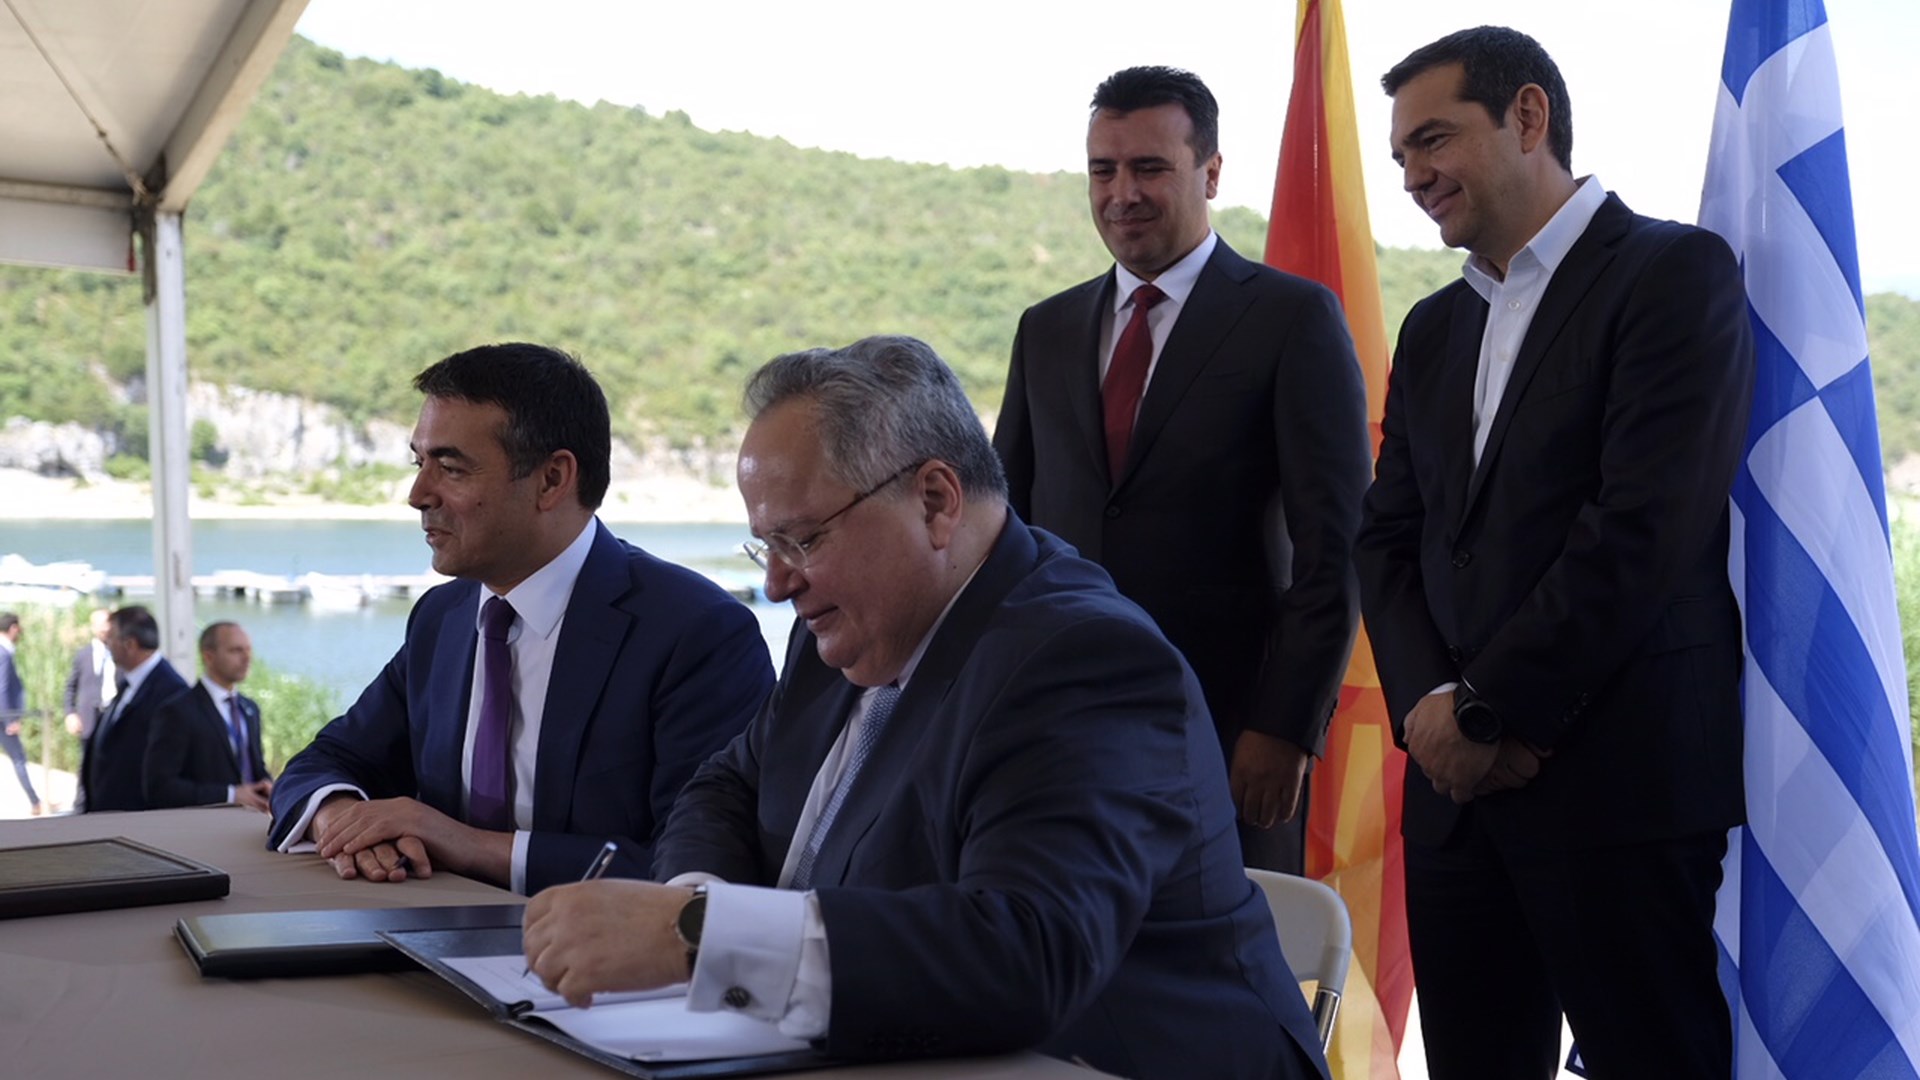 Αθήνα και ΠΓΔΜ υπέγραψαν μια «ιστορική συμφωνία» που «εξόργισε τους εθνικιστές» και στις δύο πλευρές